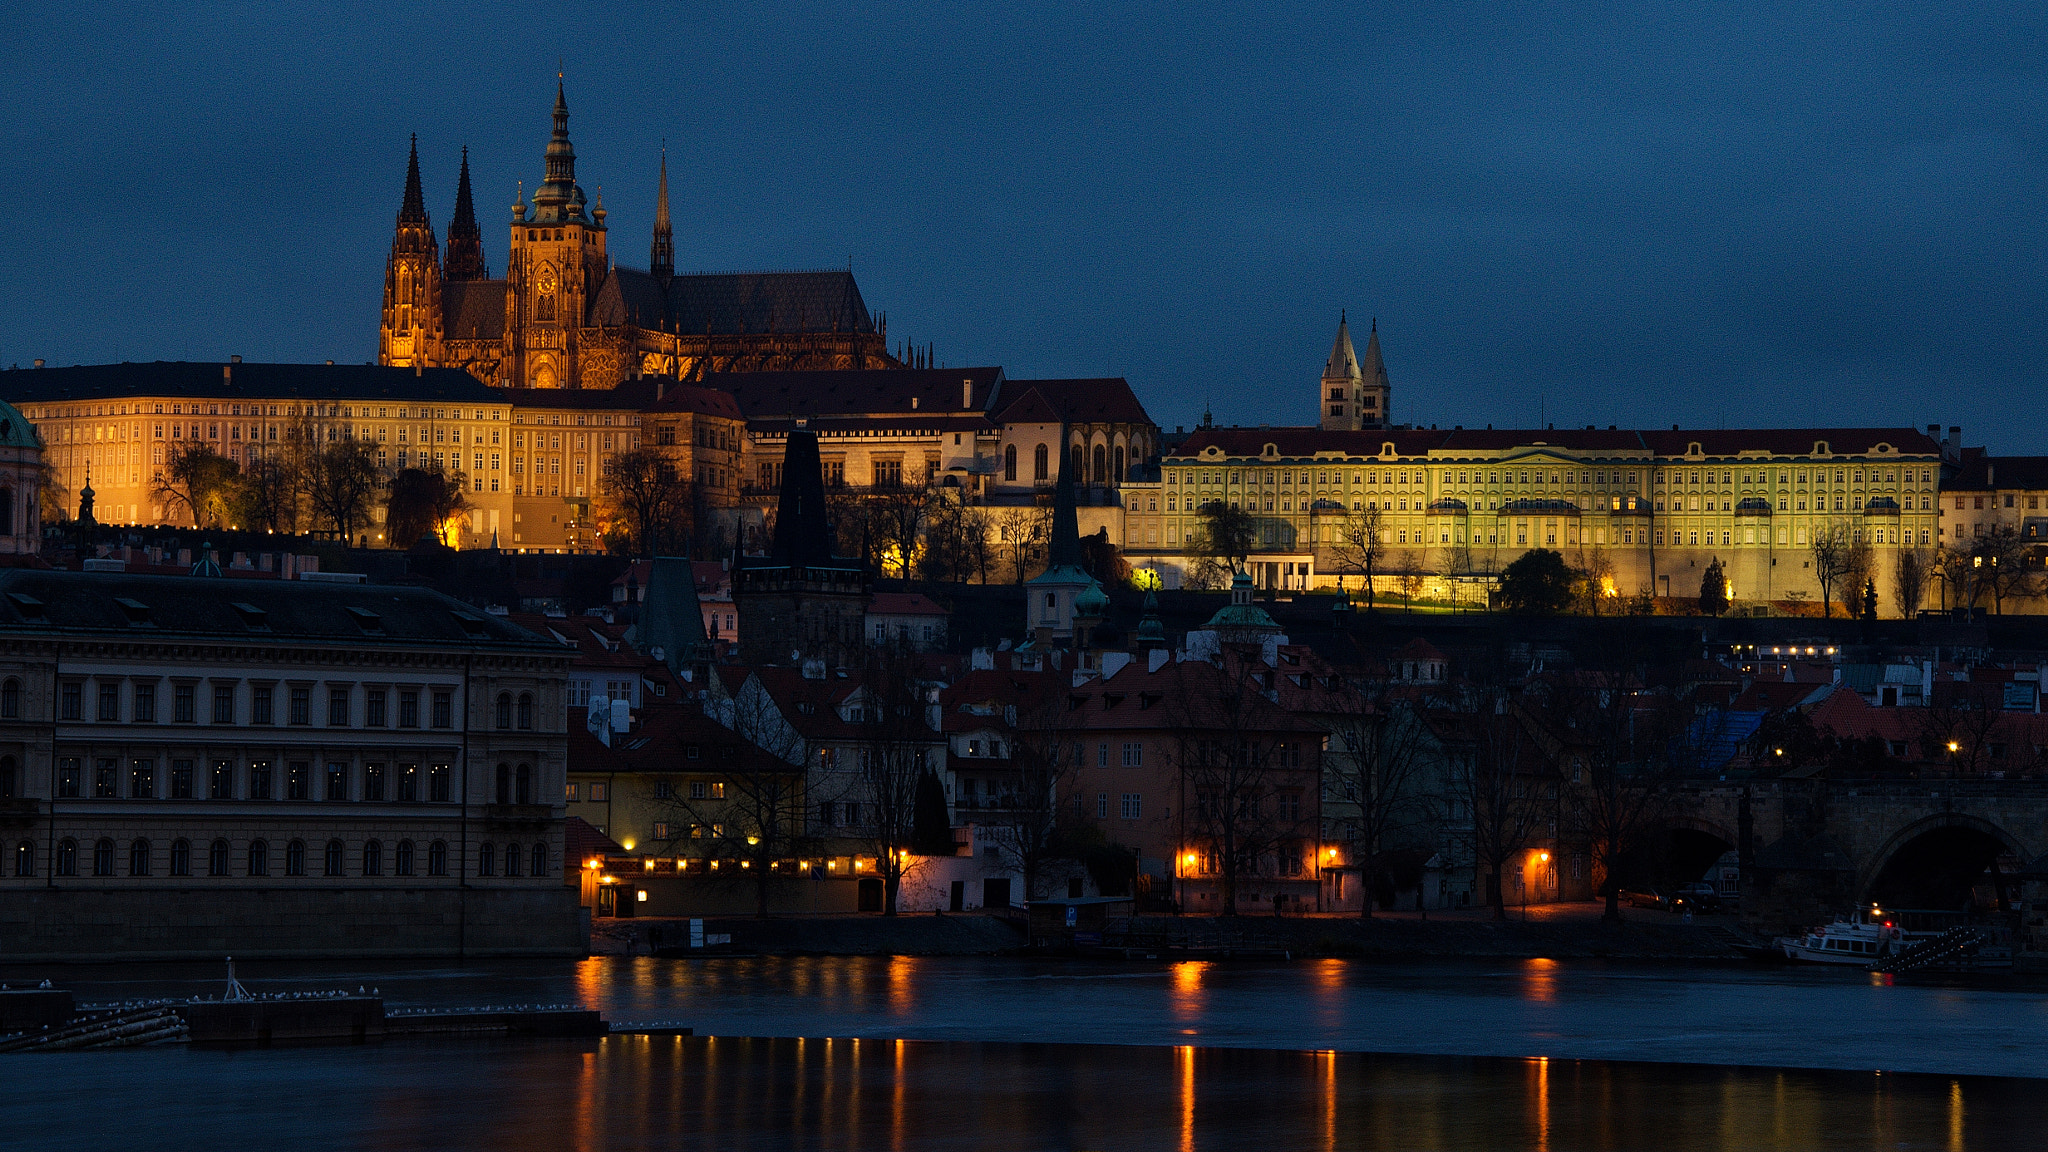 Nikon D7000 + 18.00 - 105.00 mm f/3.5 - 5.6 sample photo. Prague castle photography